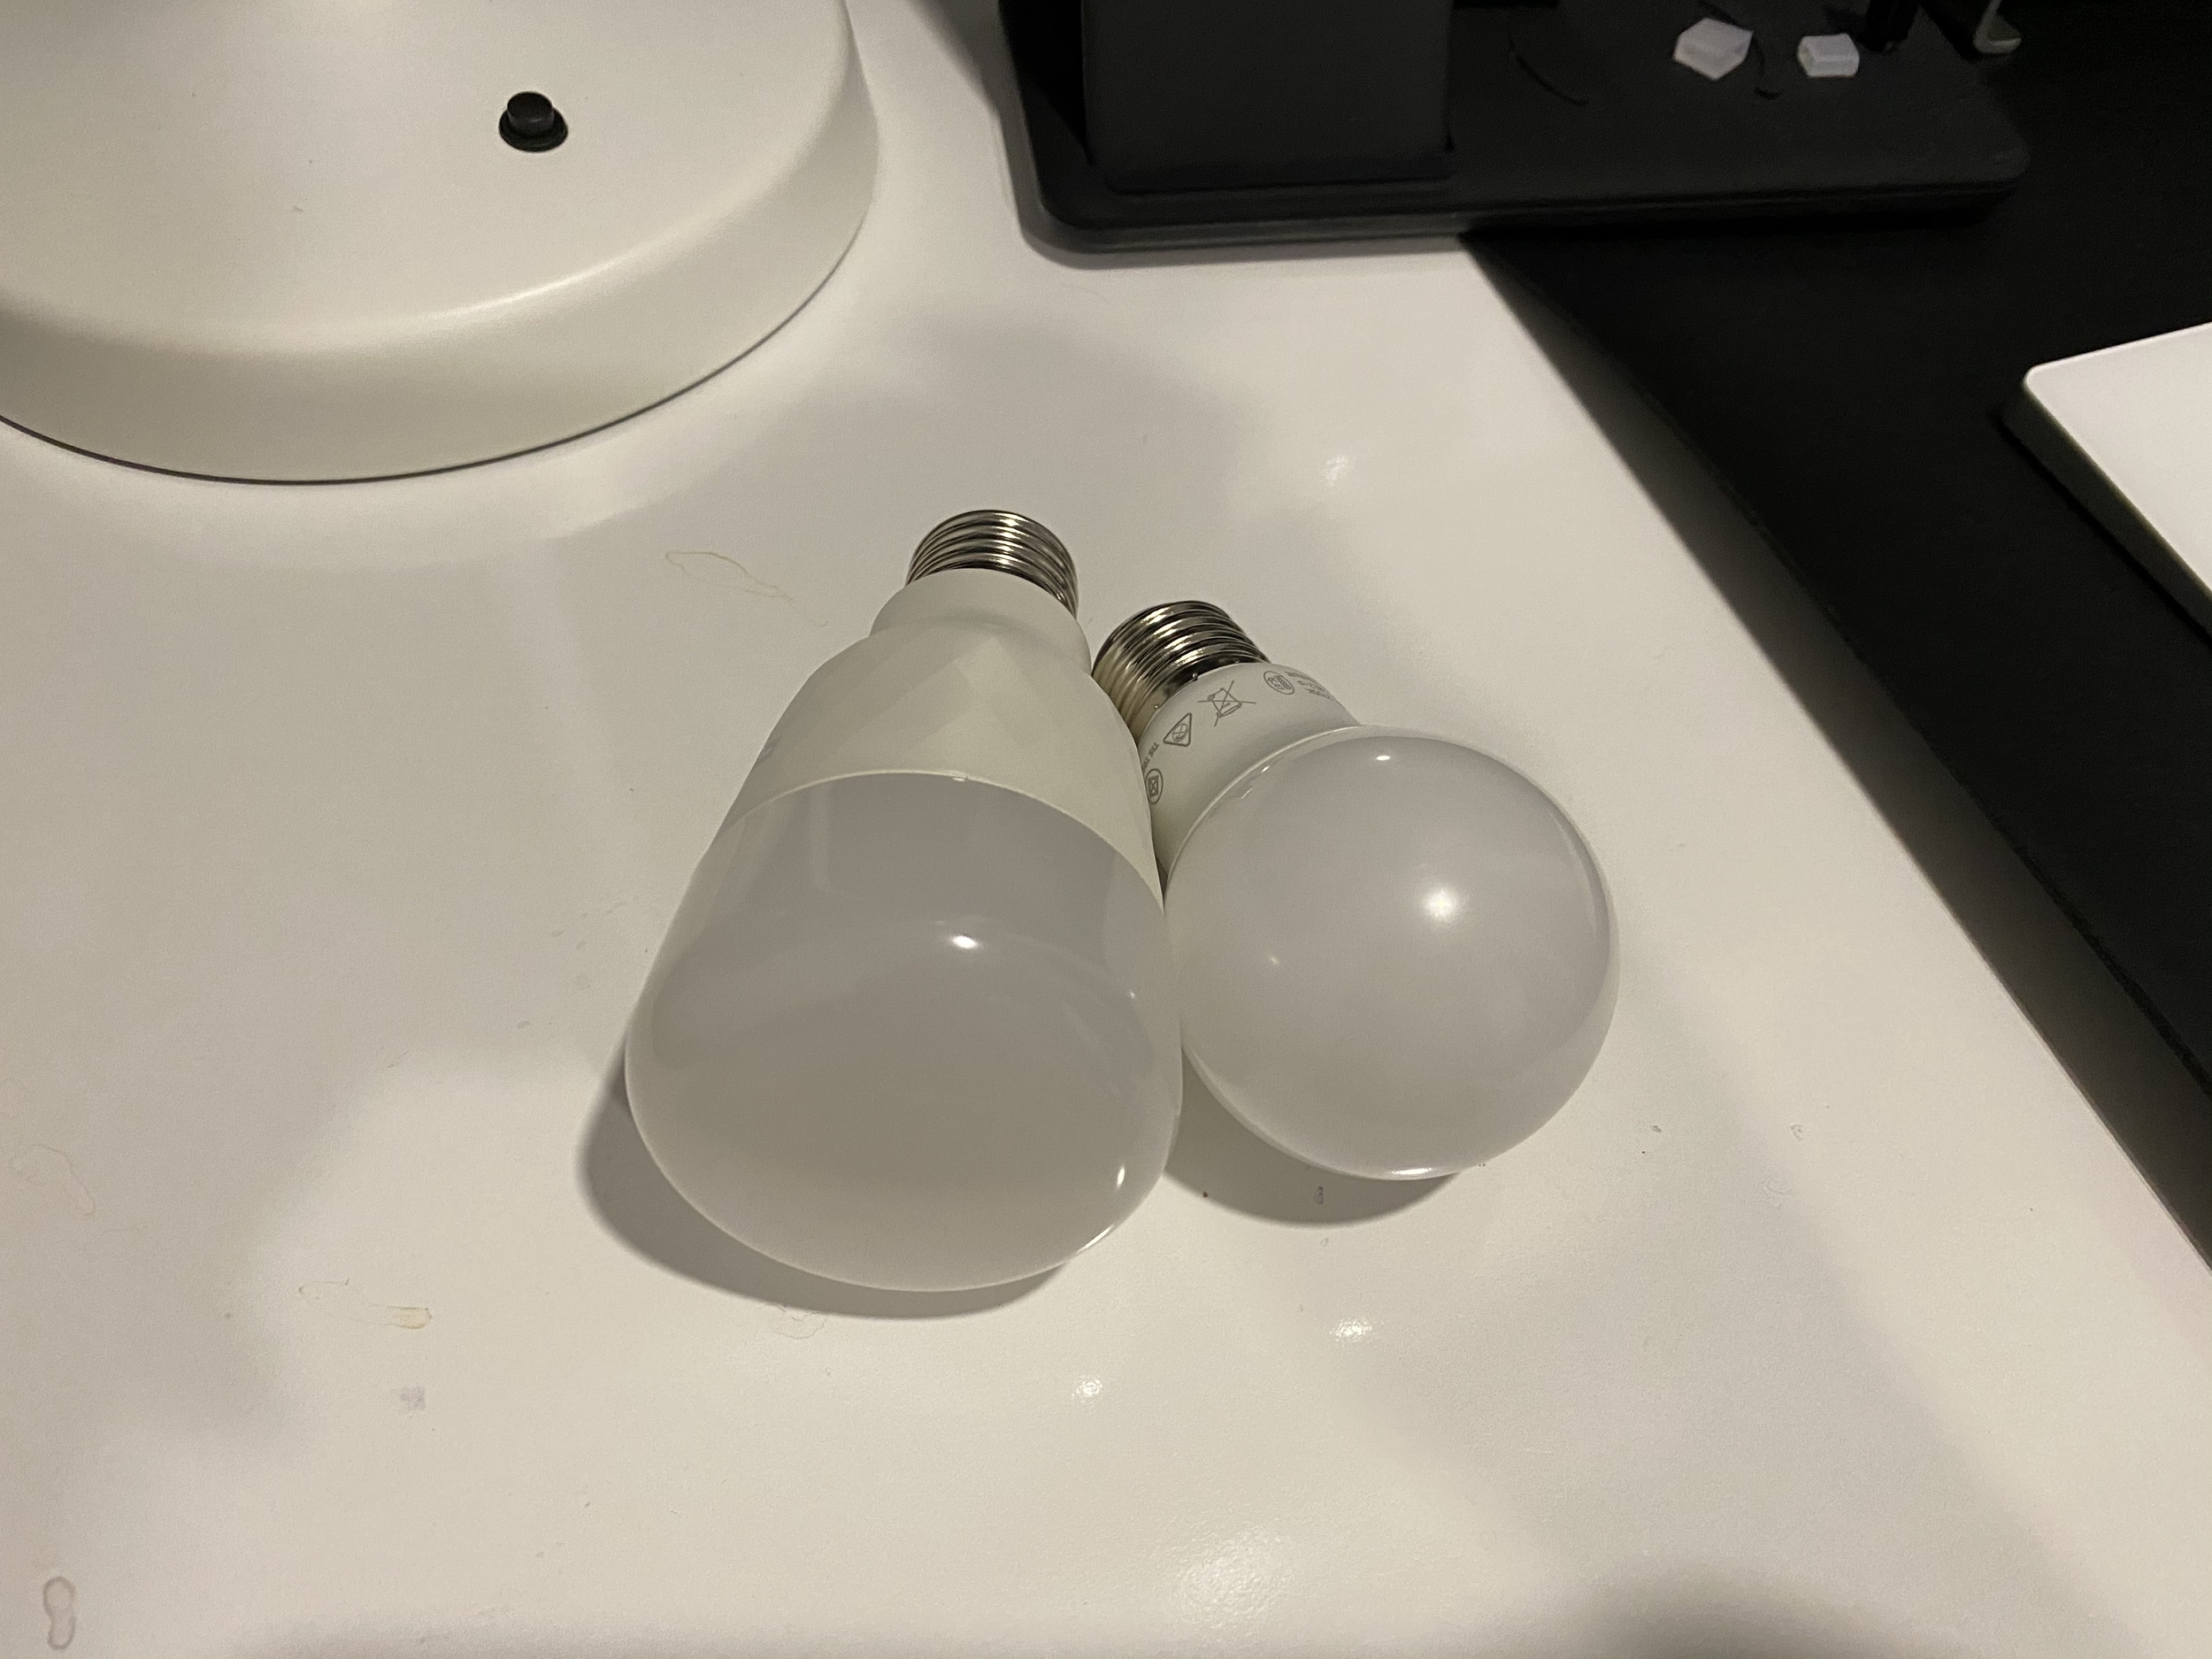 รีวิว Yeelight Smart LED Bulb